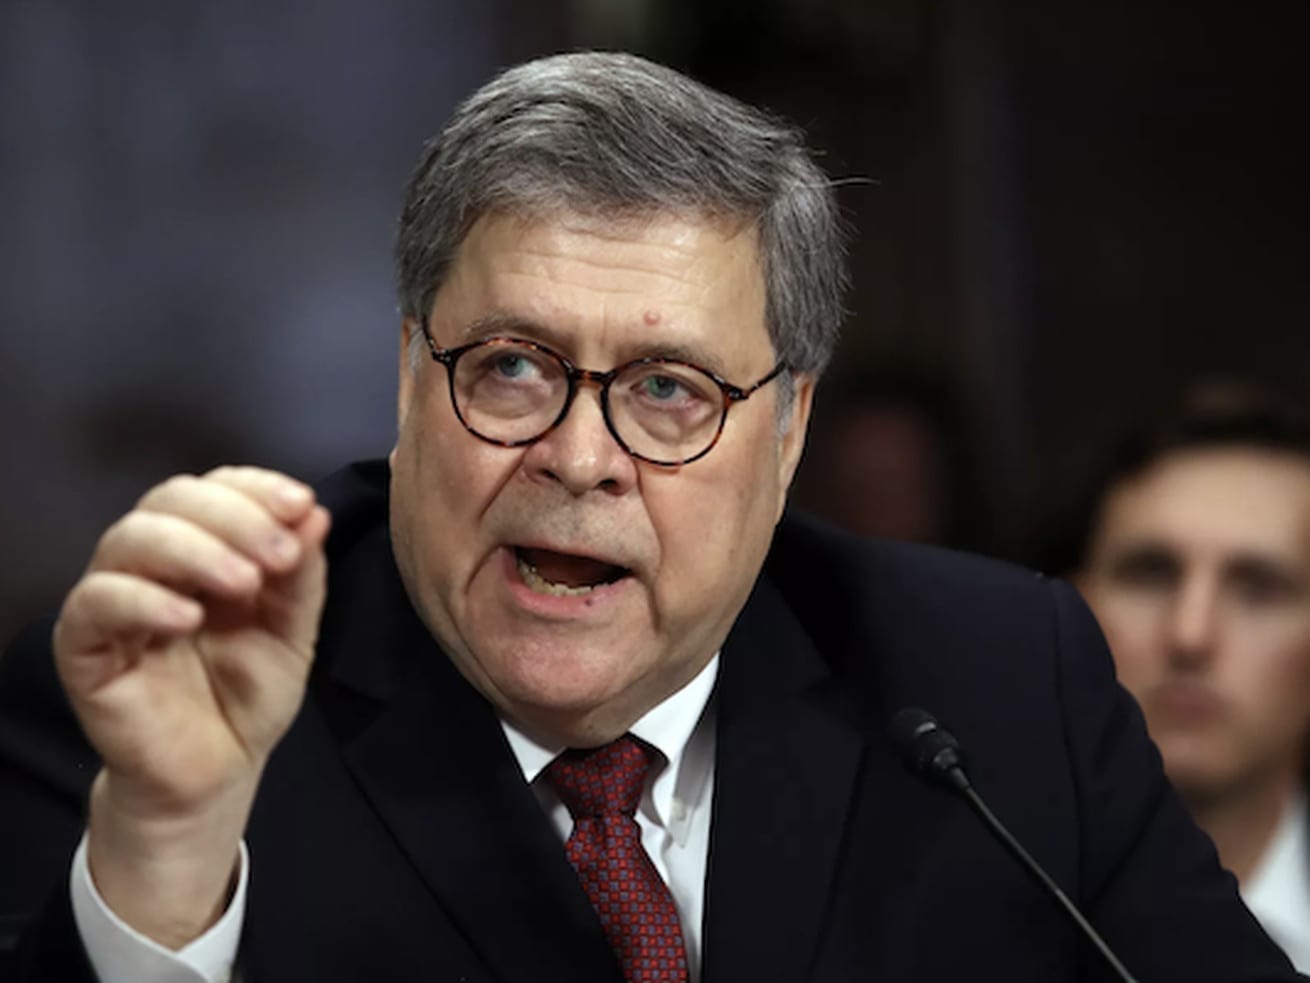 Vox Sentences: Did Barr lie to Congress?